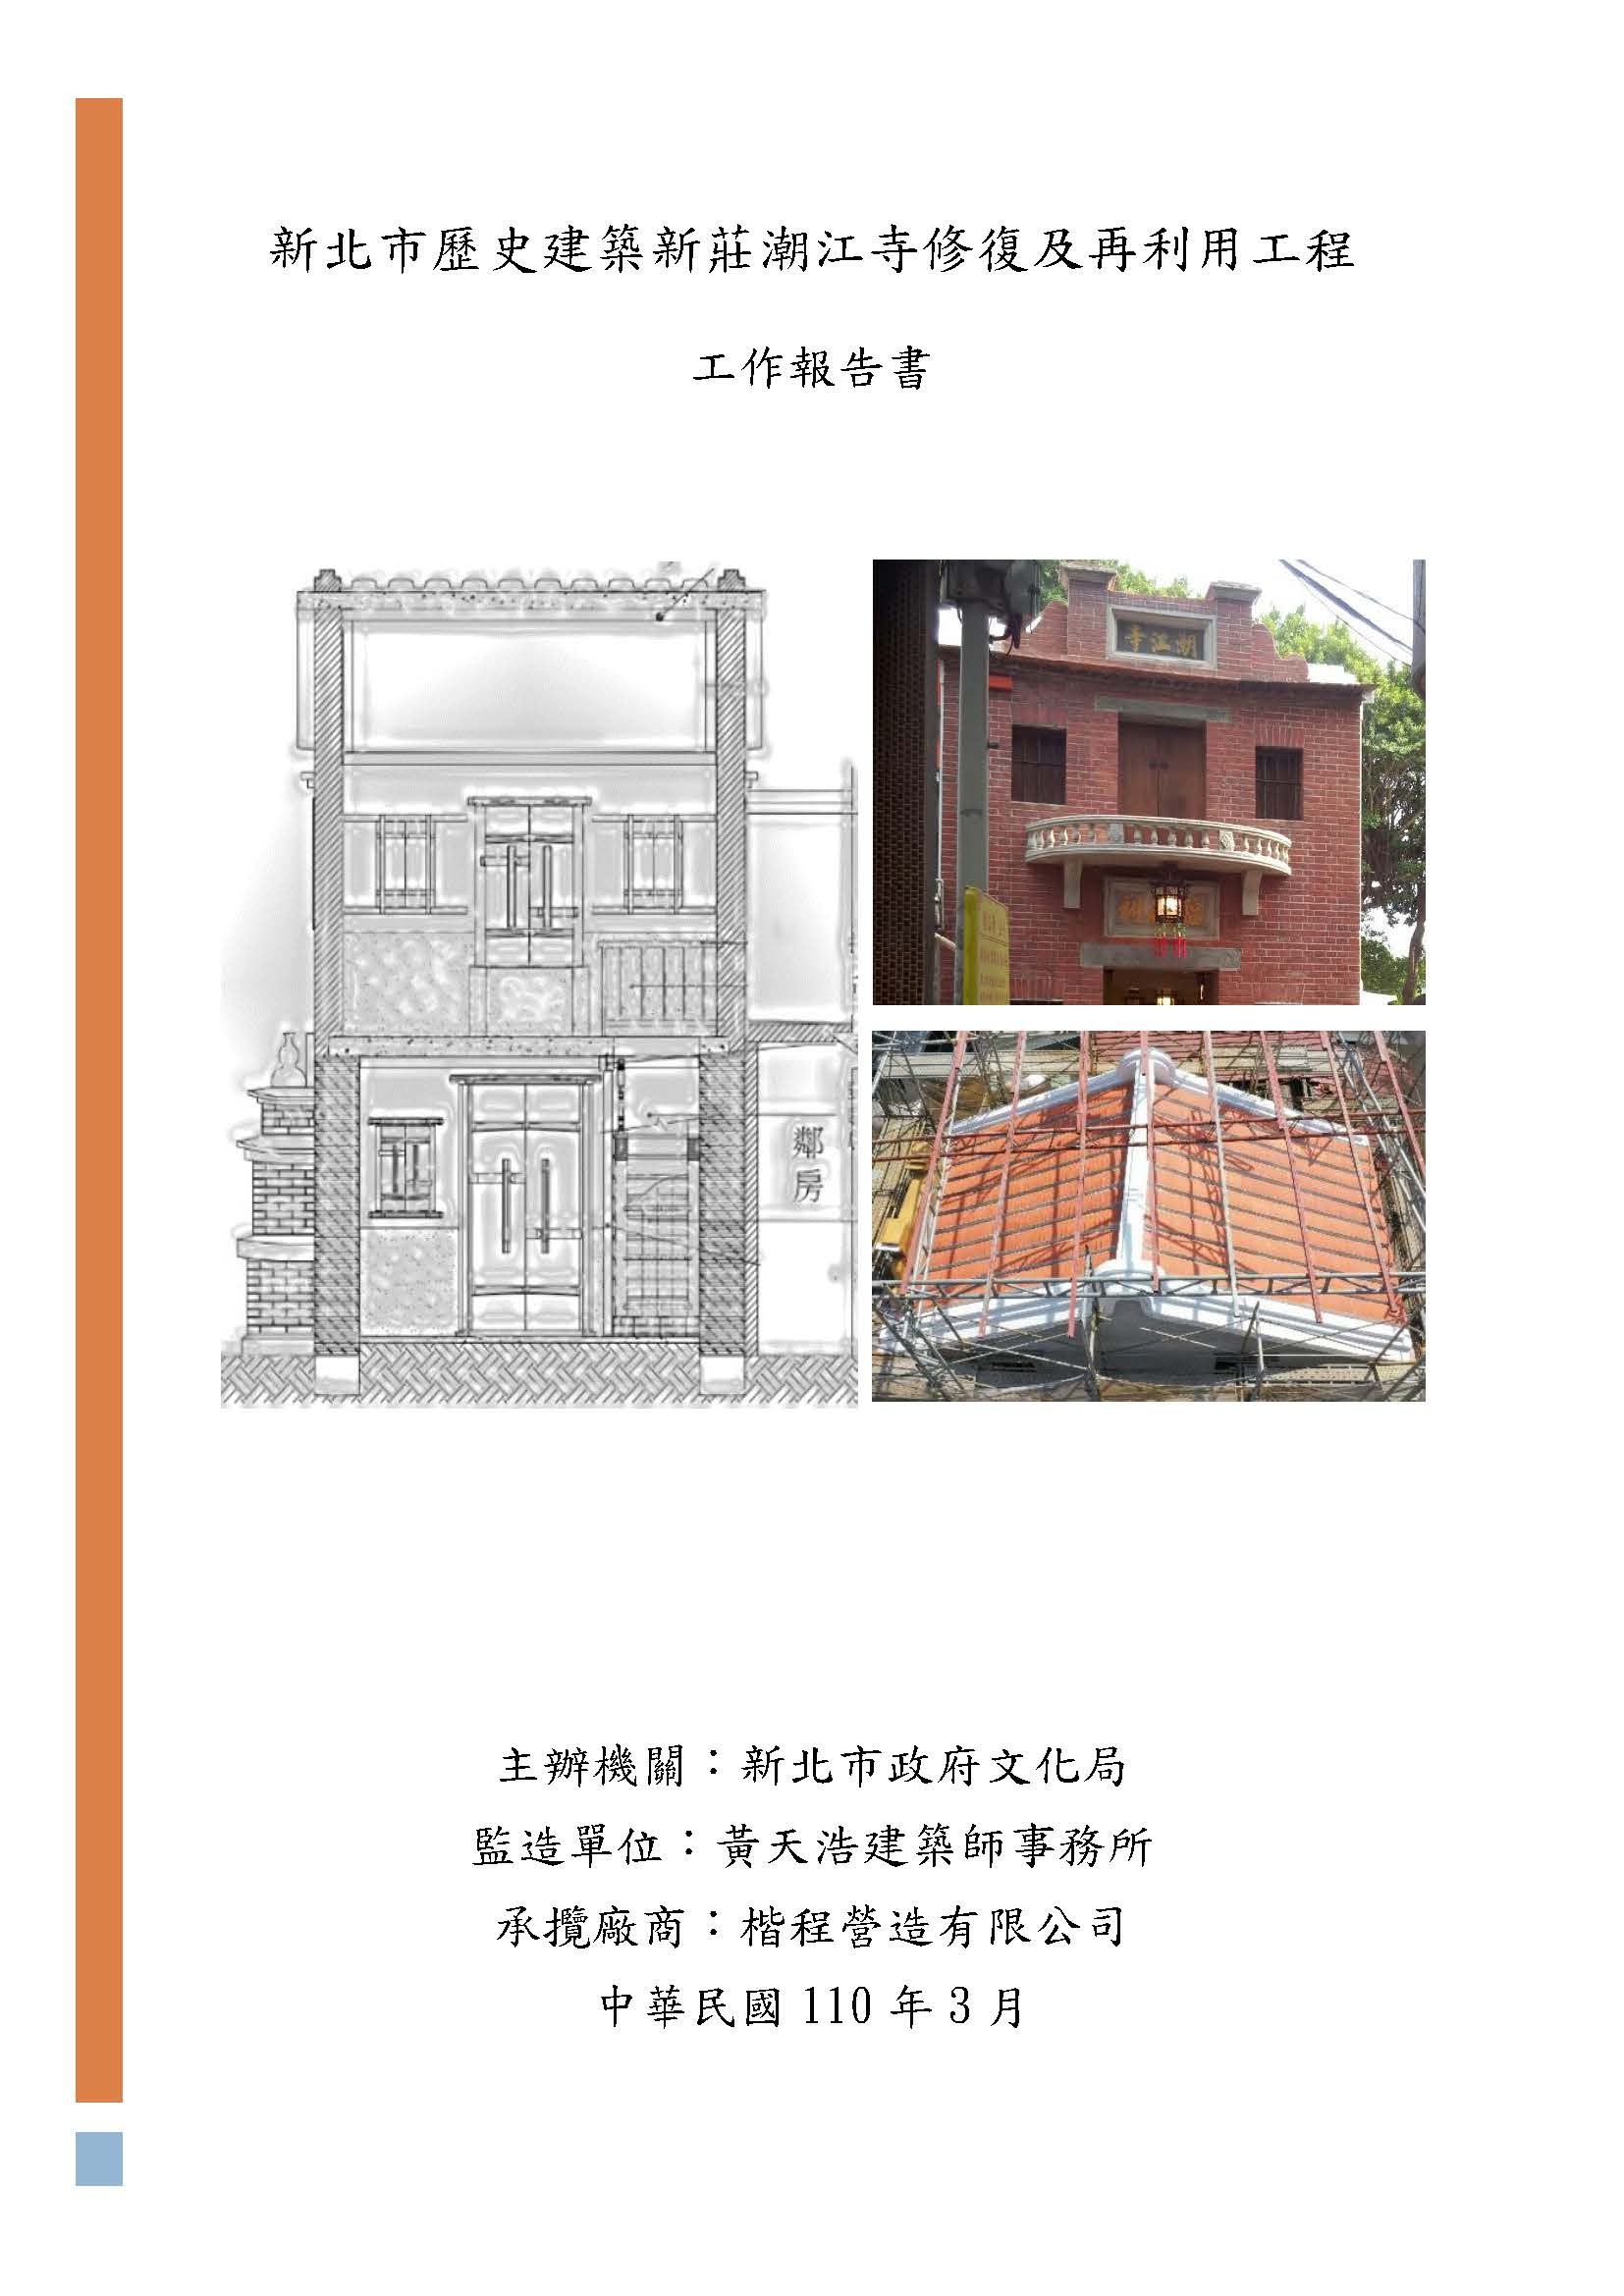 新北市歷史建築新莊潮江寺修復及再利用工程工作報告書